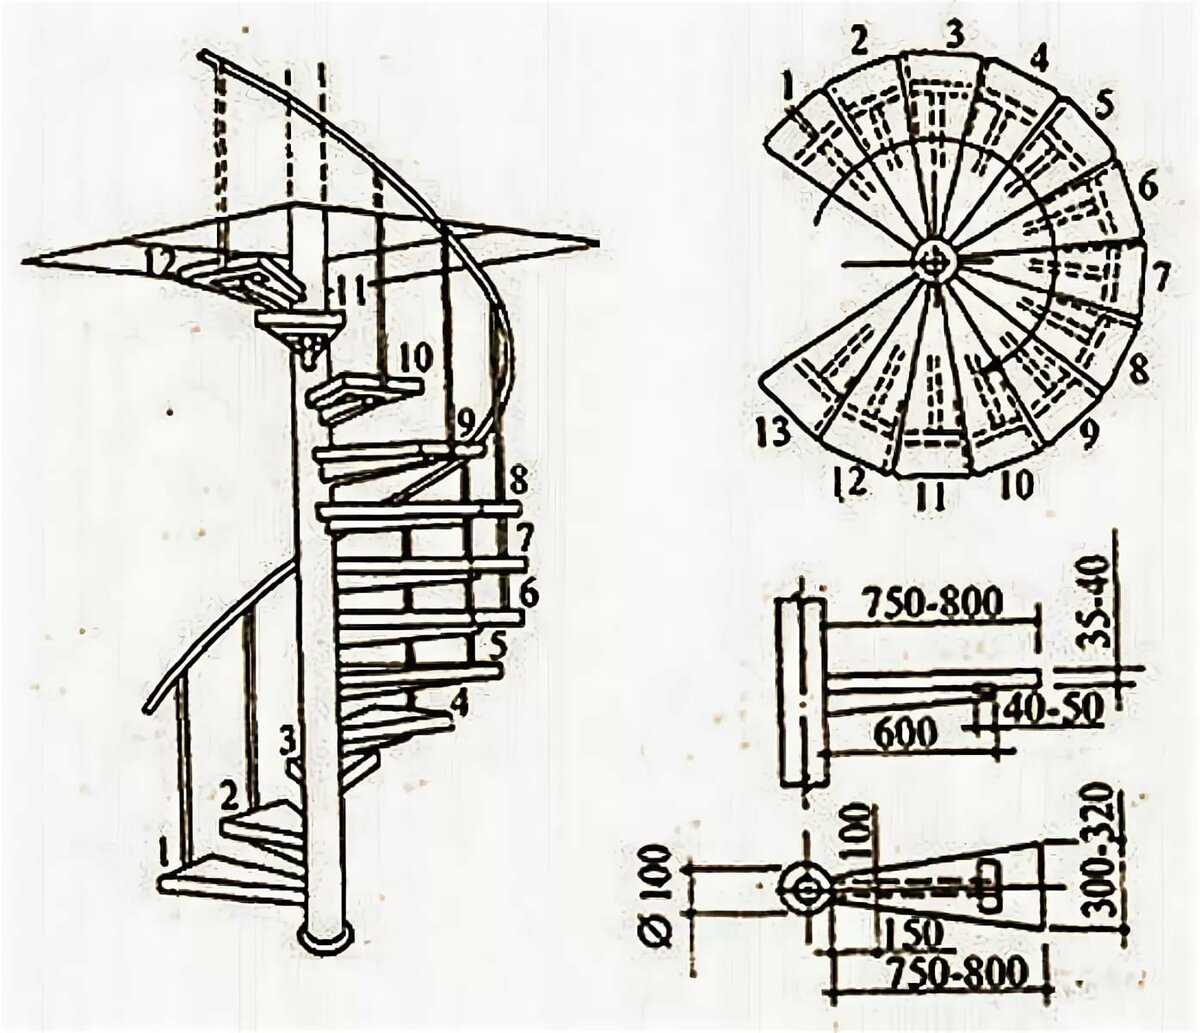 Деревянные винтовые лестницы своими руками: размеры и чертежи